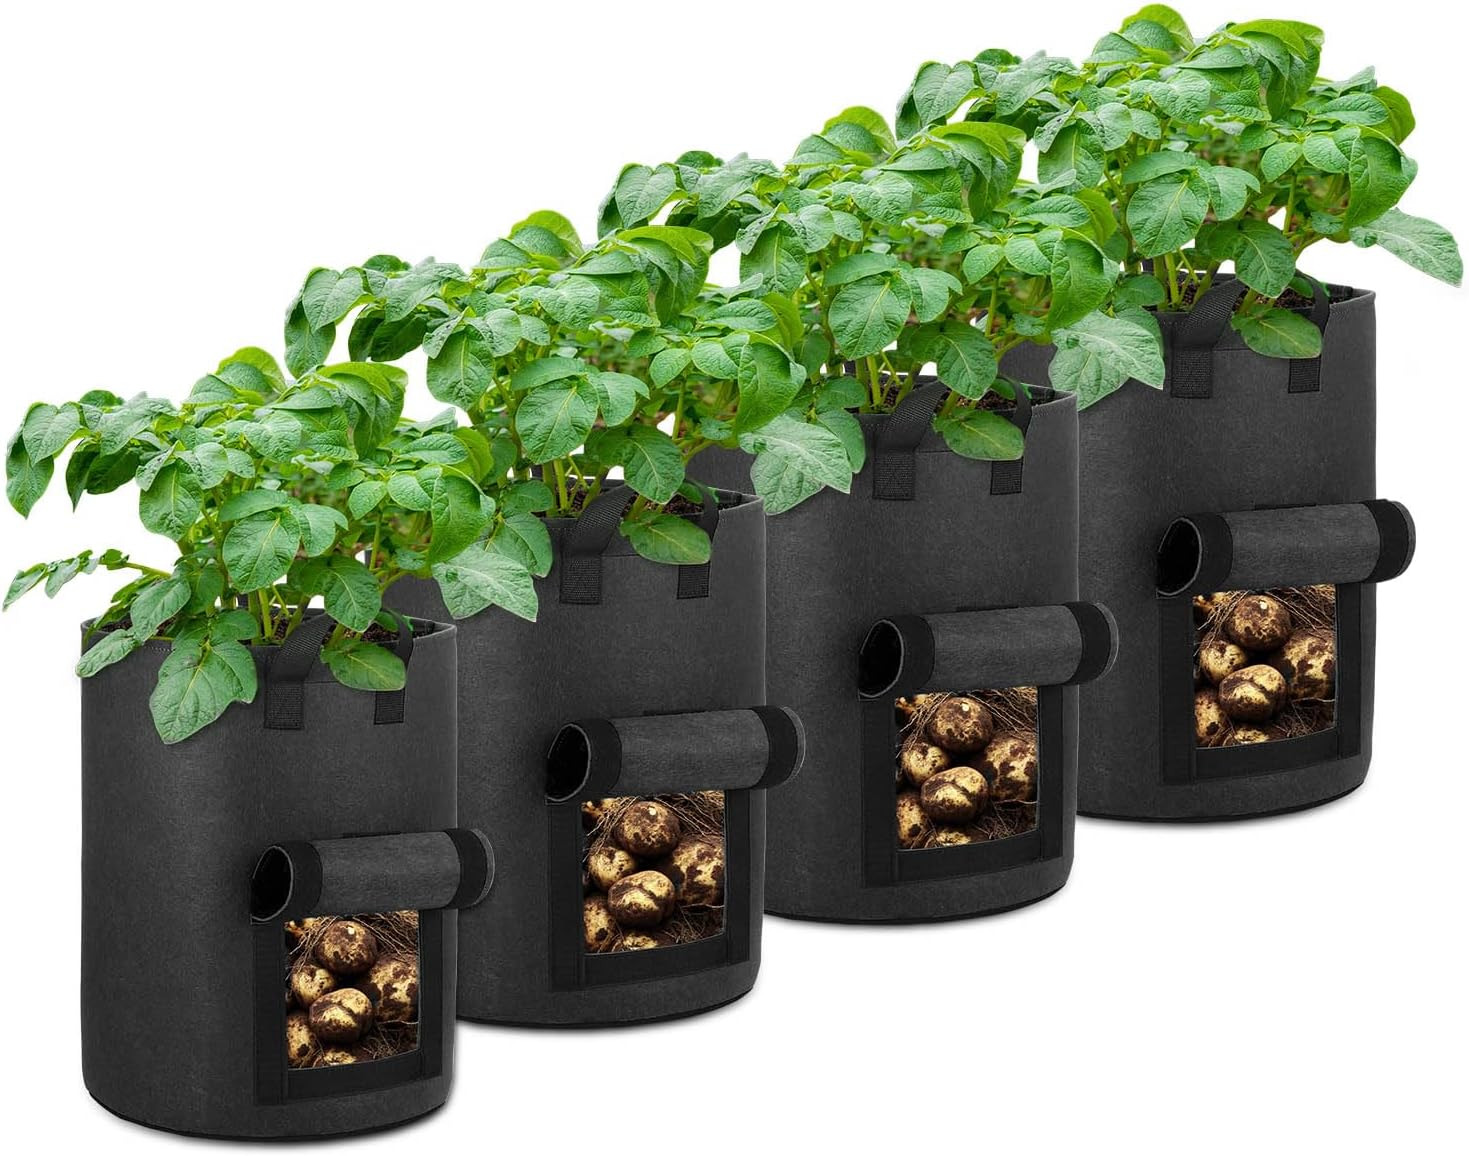  10-Gallon Potato Grow Bags Foldable, Breathable, and Non-Woven Utopia Home